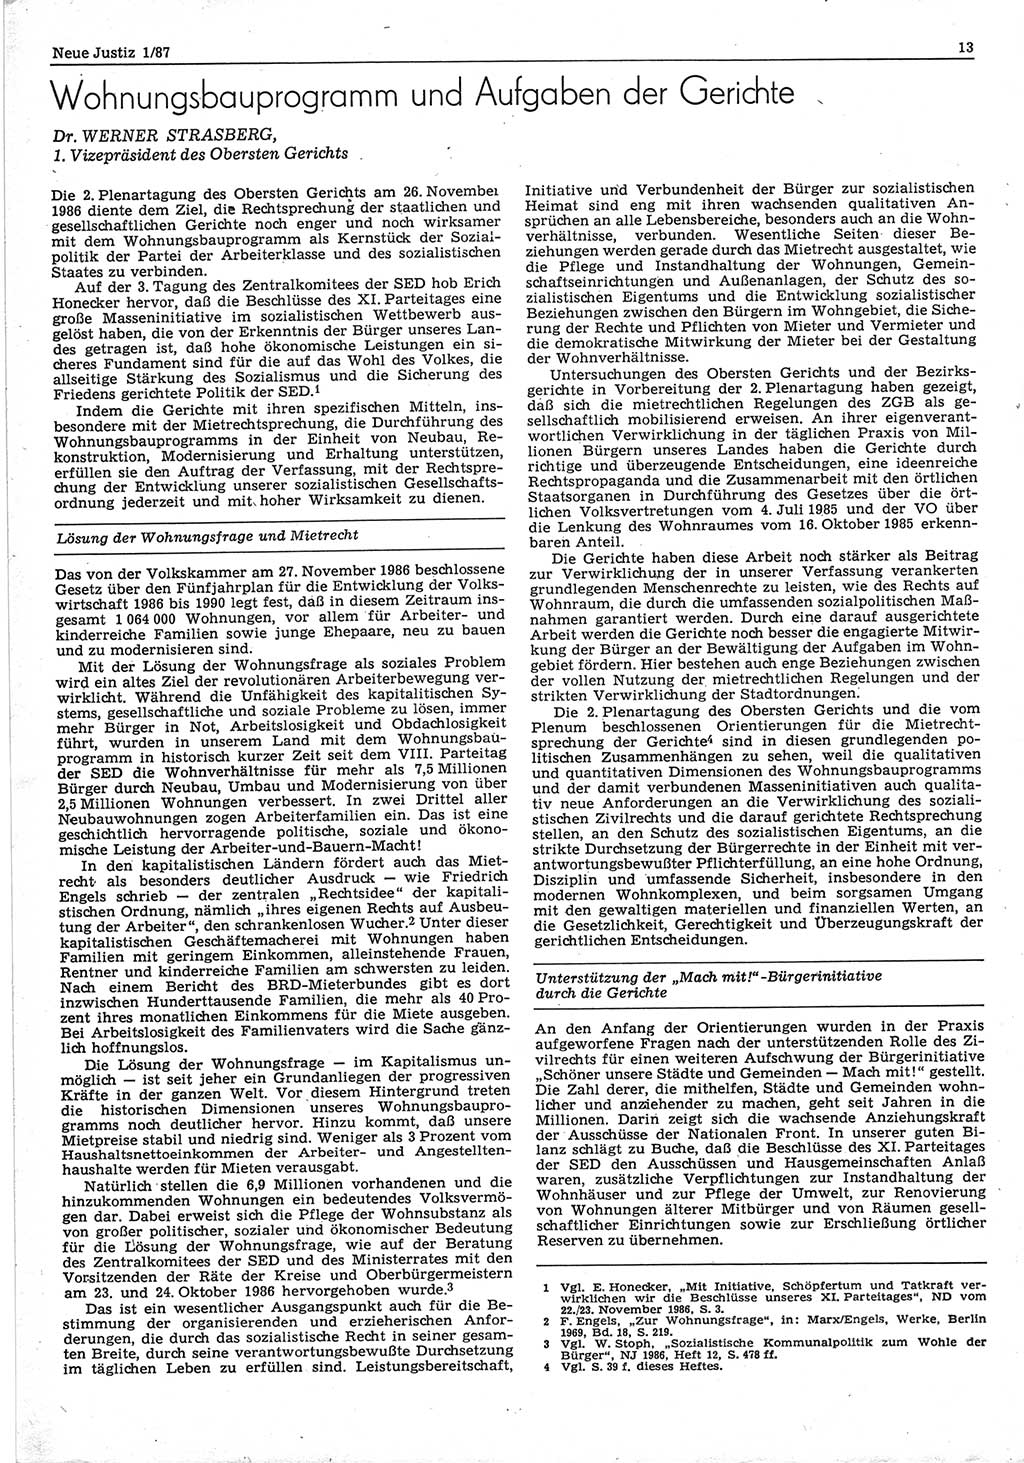 Neue Justiz (NJ), Zeitschrift für sozialistisches Recht und Gesetzlichkeit [Deutsche Demokratische Republik (DDR)], 41. Jahrgang 1987, Seite 13 (NJ DDR 1987, S. 13)